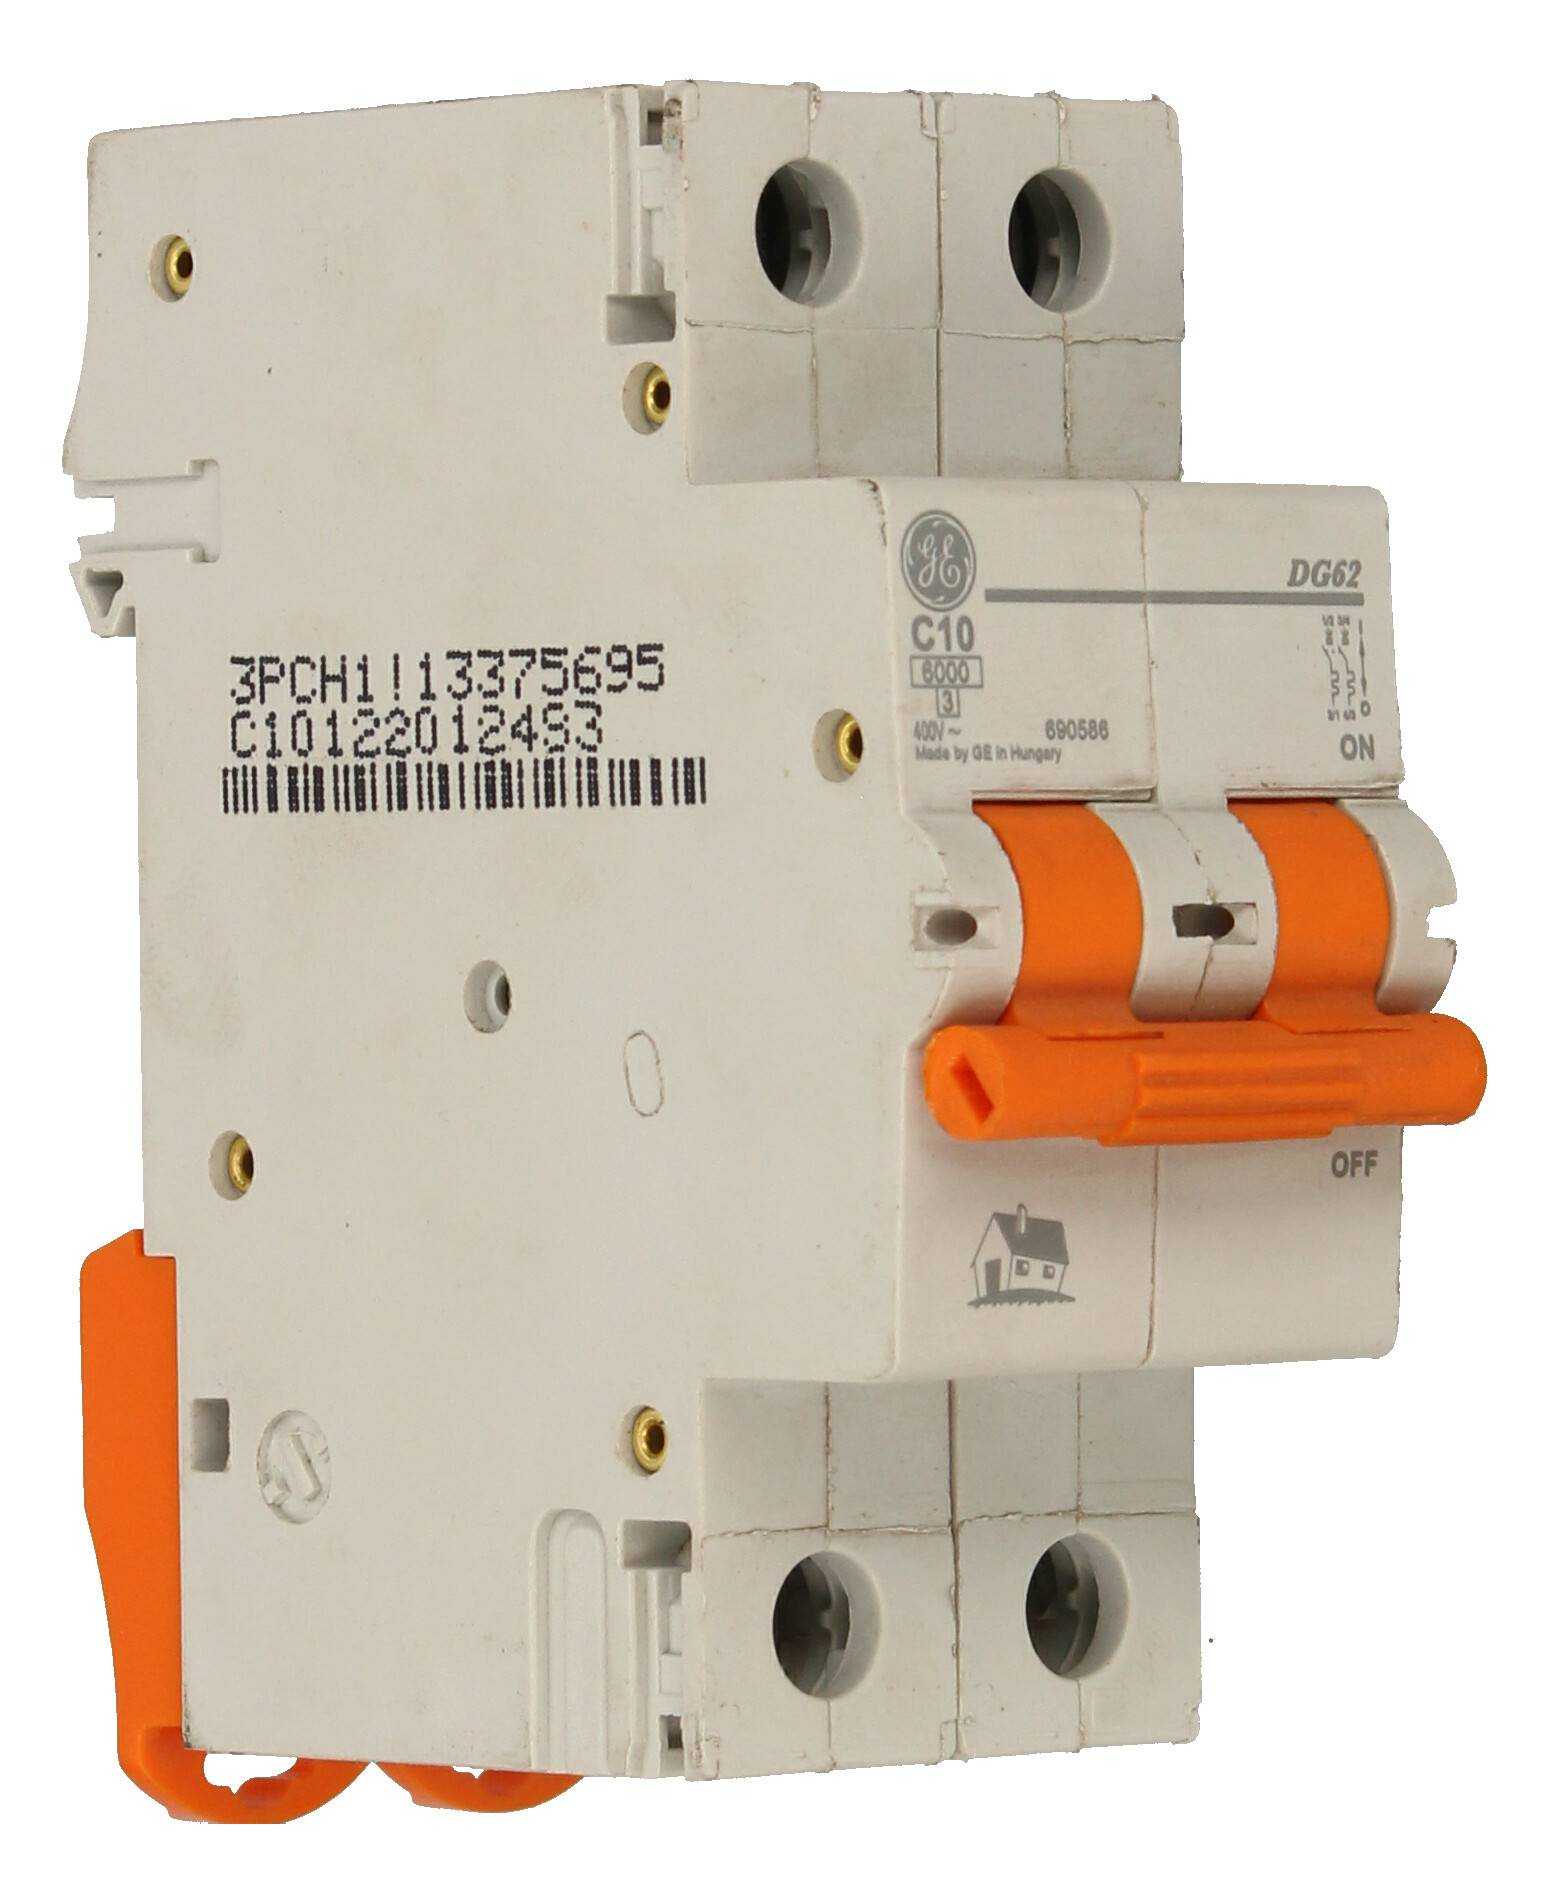 GE POWER 690586 Switch DG62C10 - Image 1